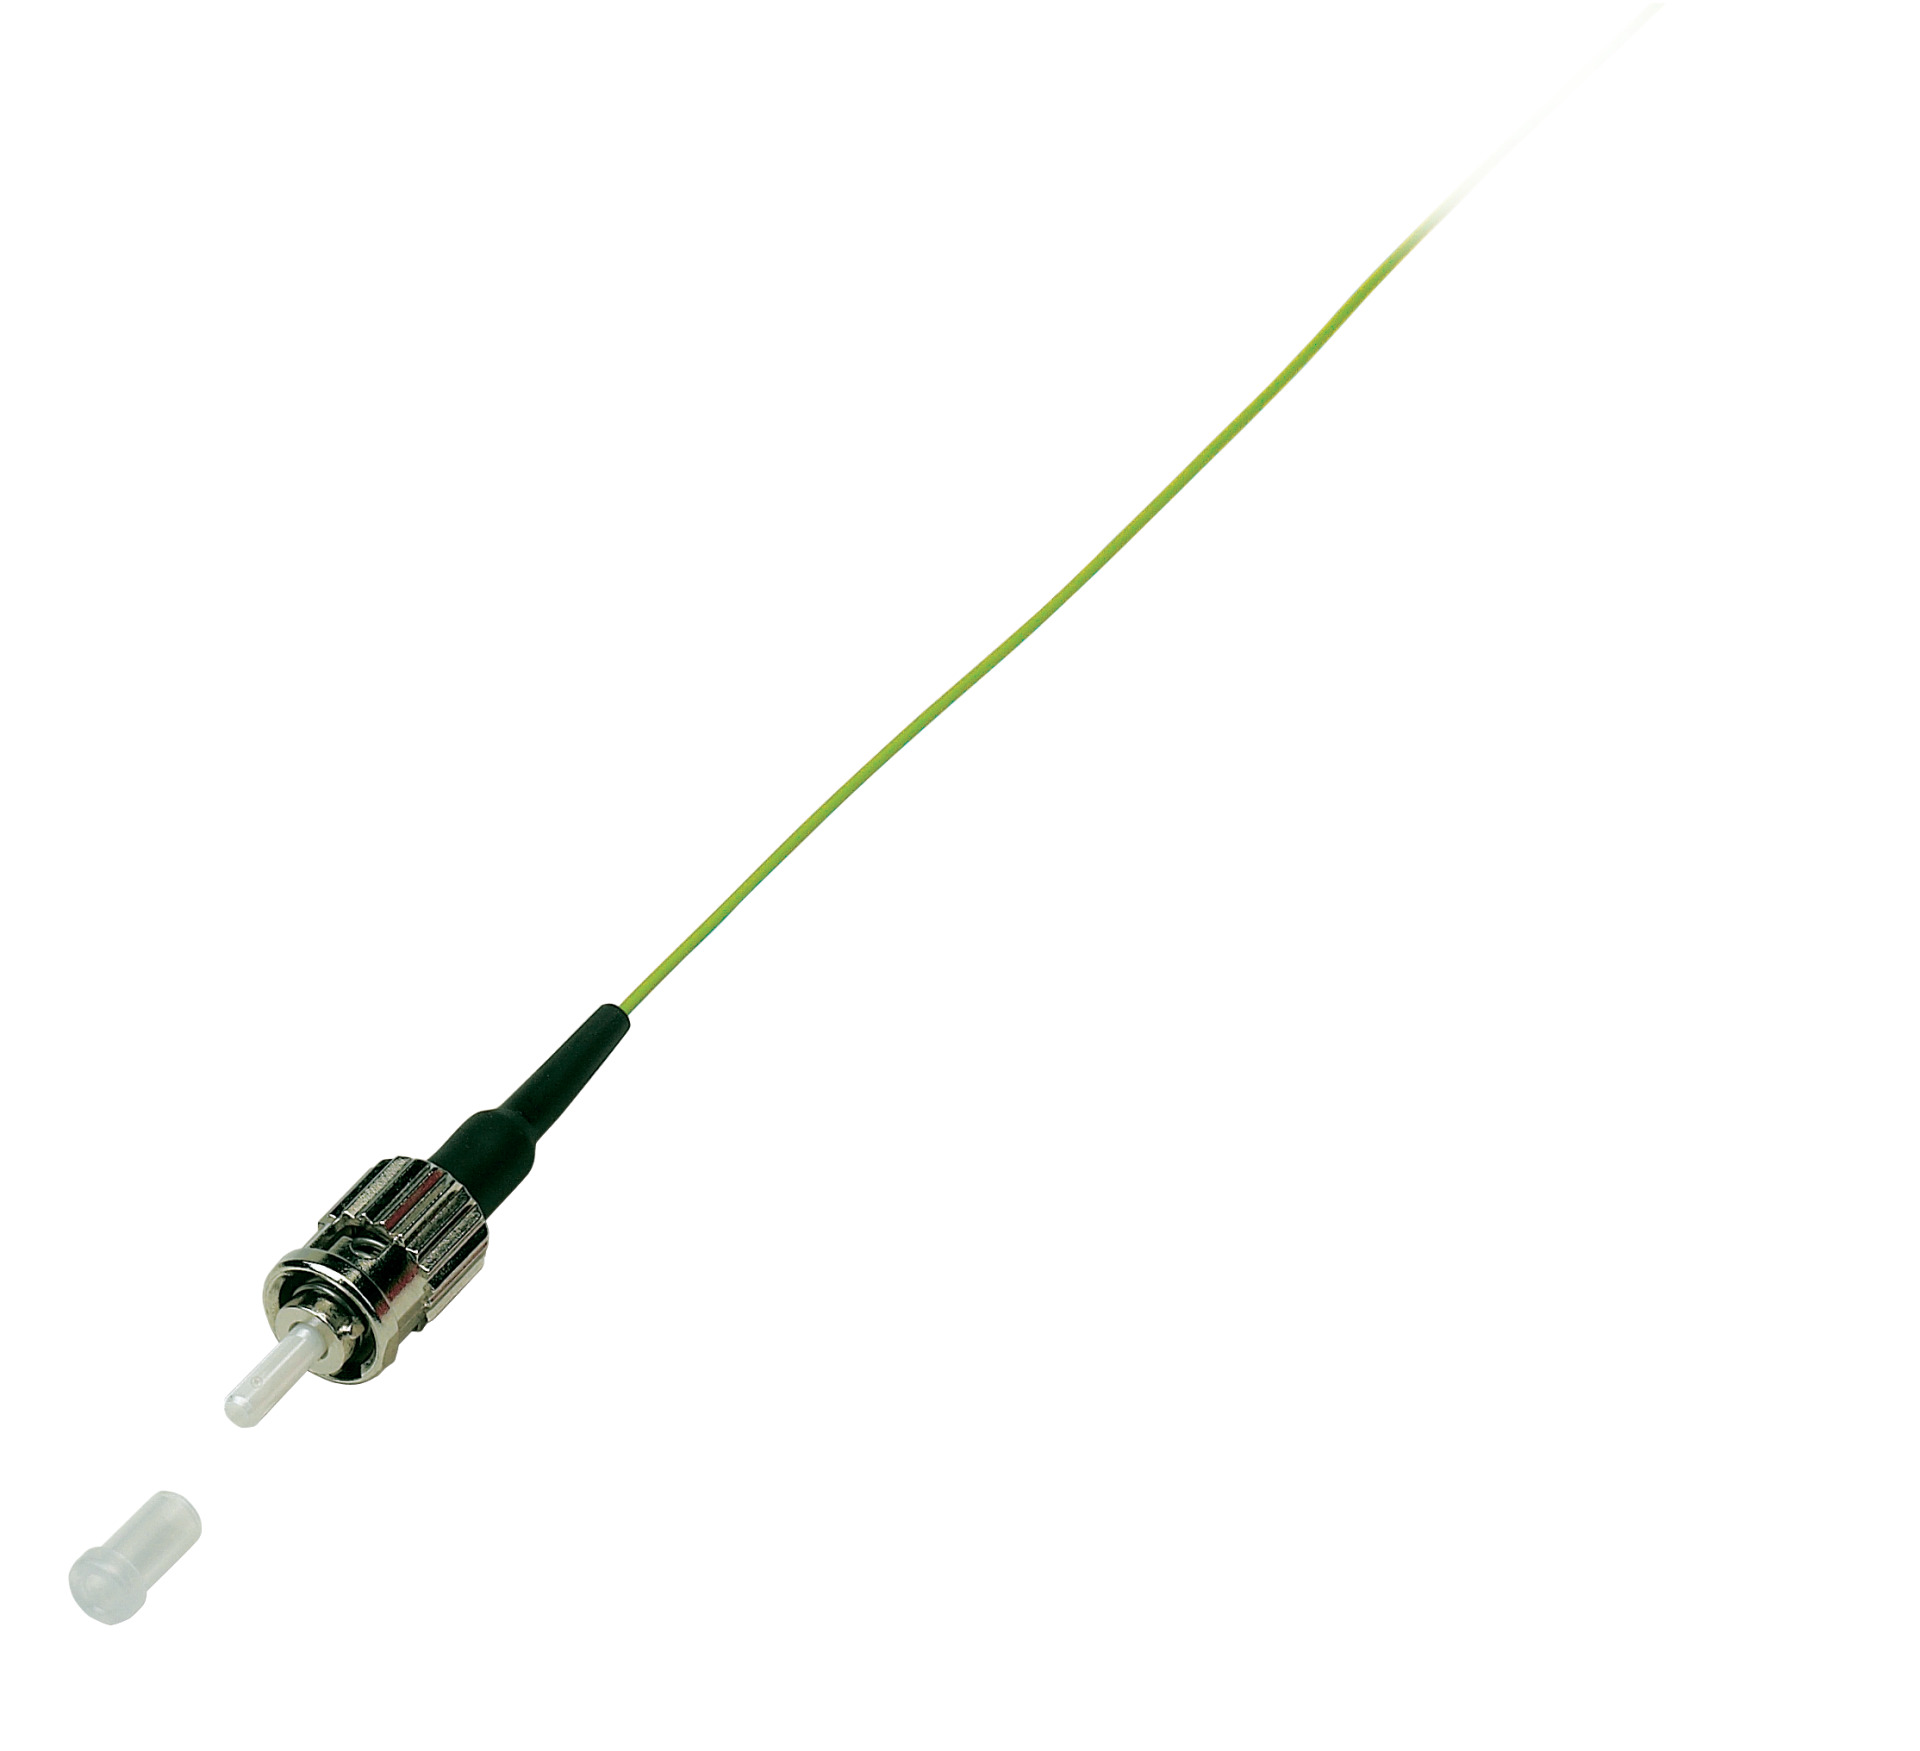 Faserpigtail ST OM2 -Grün 2m - 1 Stück